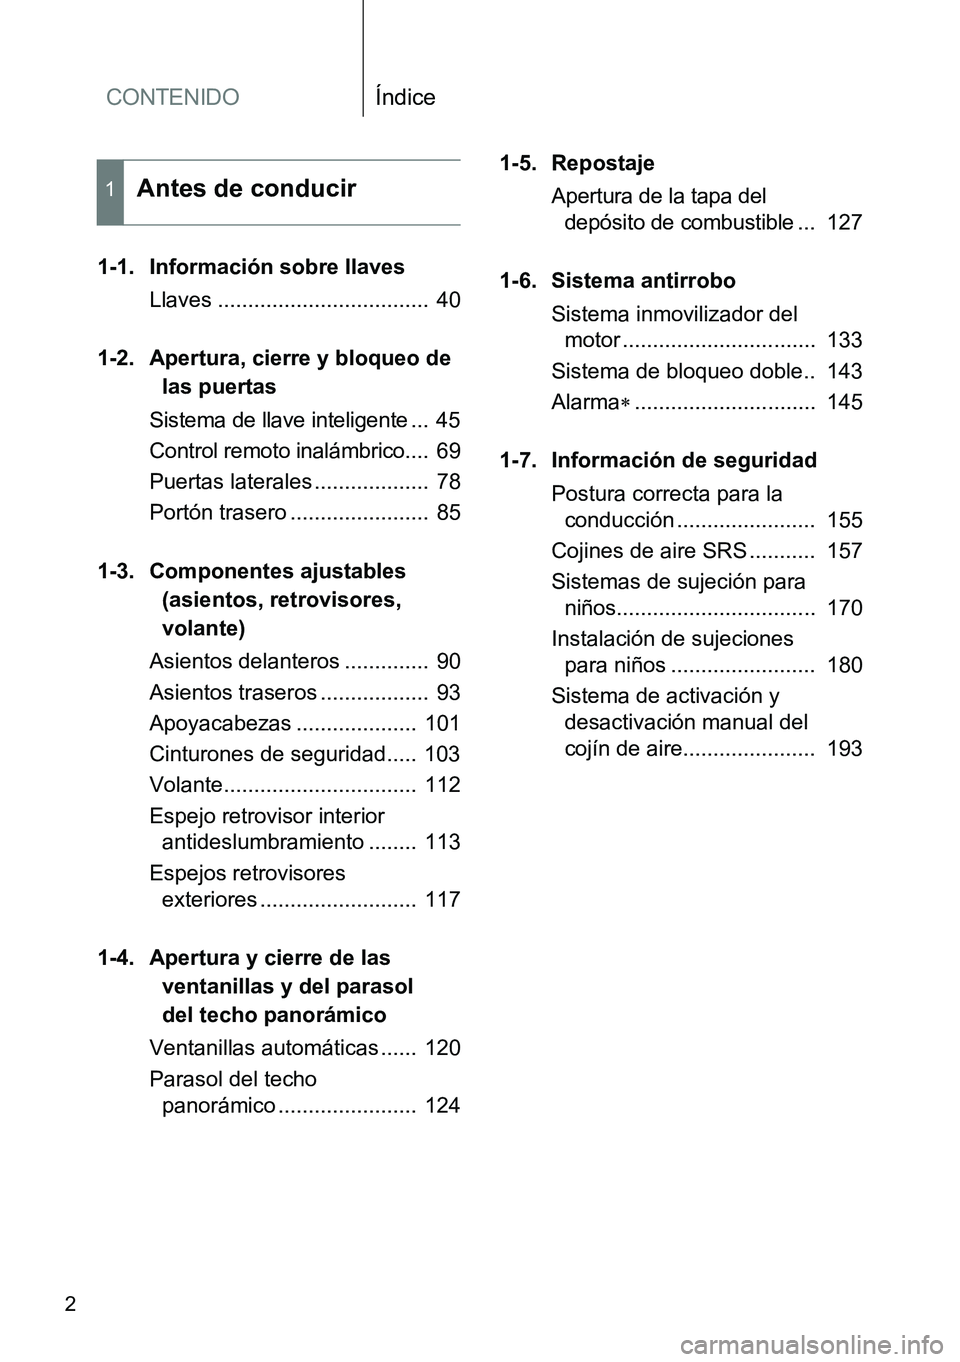 TOYOTA VERSO 2015  Manuale de Empleo (in Spanish) CONTENIDOÍndice
2
1-1. Información sobre llaves
Llaves ...................................  40
1-2. Apertura, cierre y bloqueo de 
las puertas
Sistema de llave inteligente ...  45
Control remoto ina